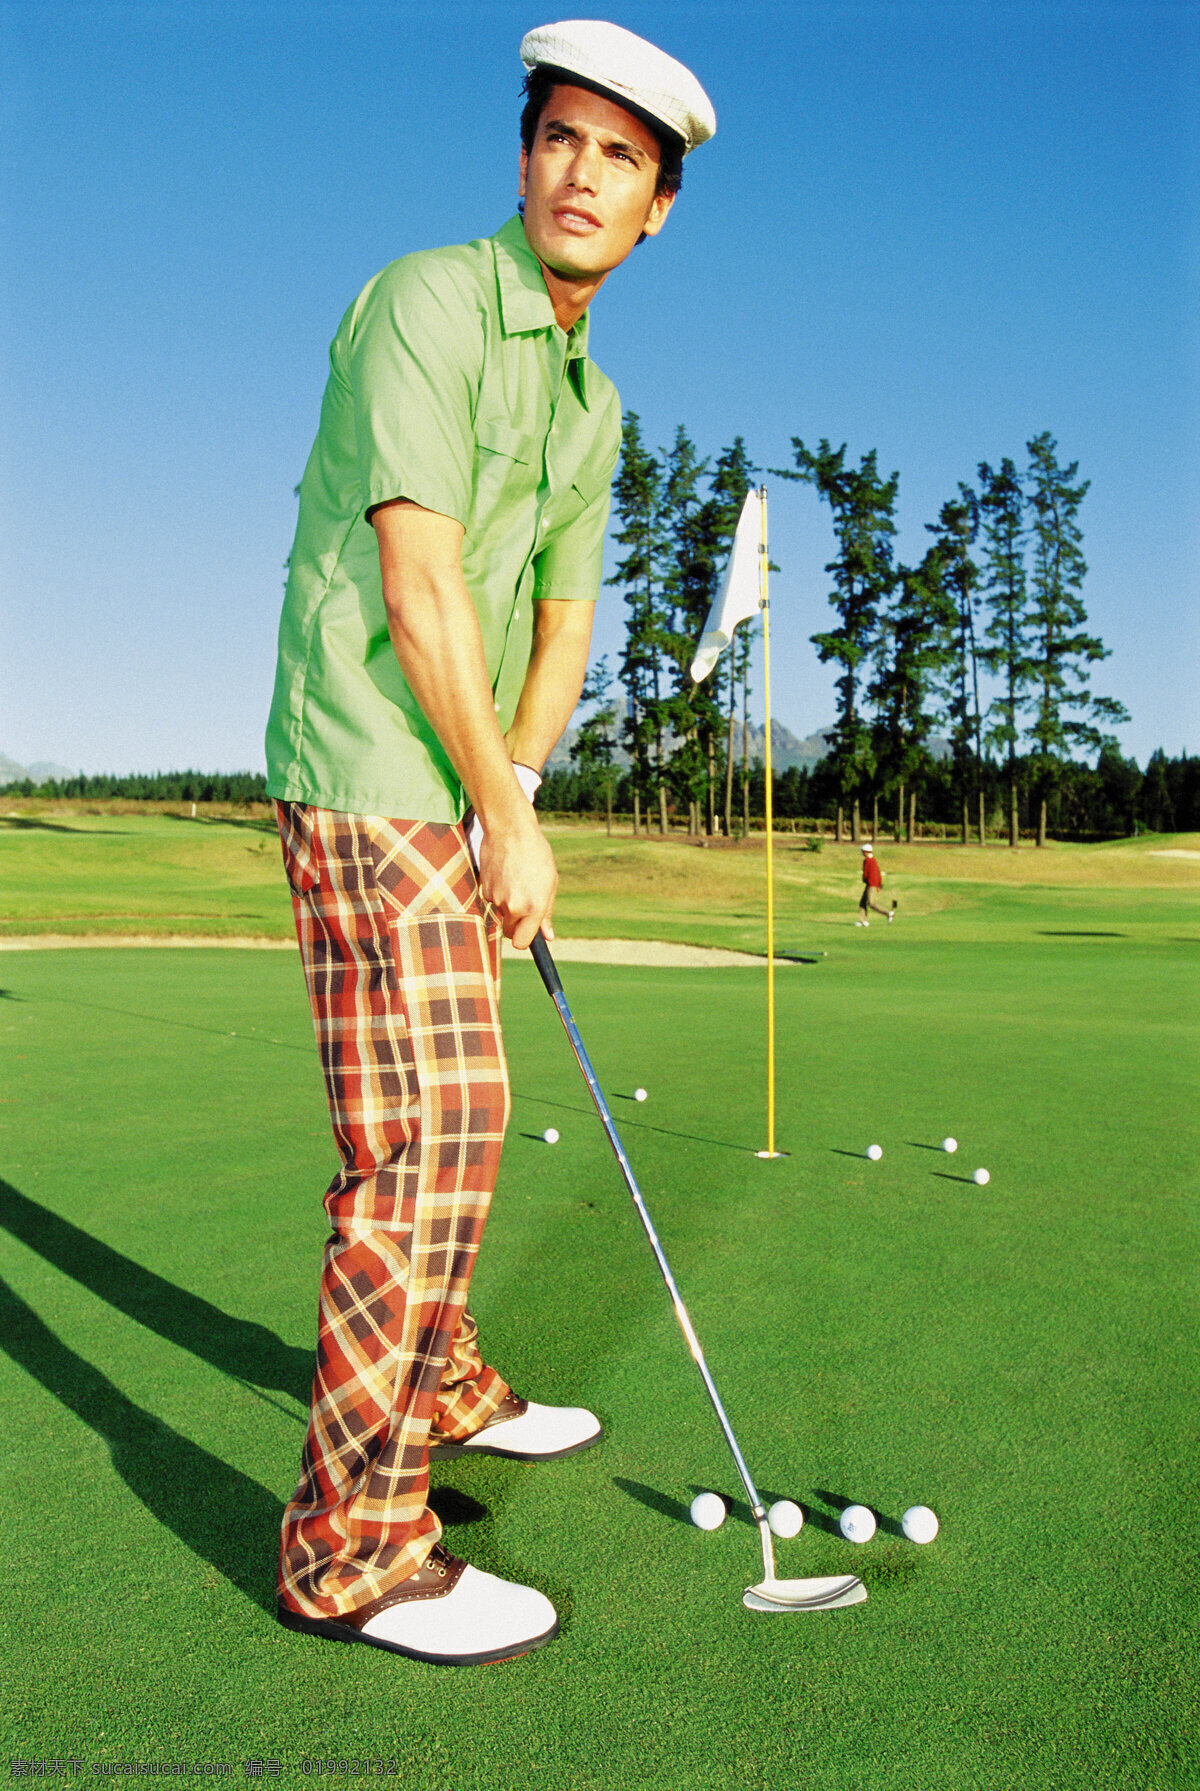 高尔夫 时尚 男性 高尔夫球 球场 球杆 草地 贵族运动 休闲运动 尊贵运动 体育运动 时尚男性 男人 英伦风 生活百科 绿色